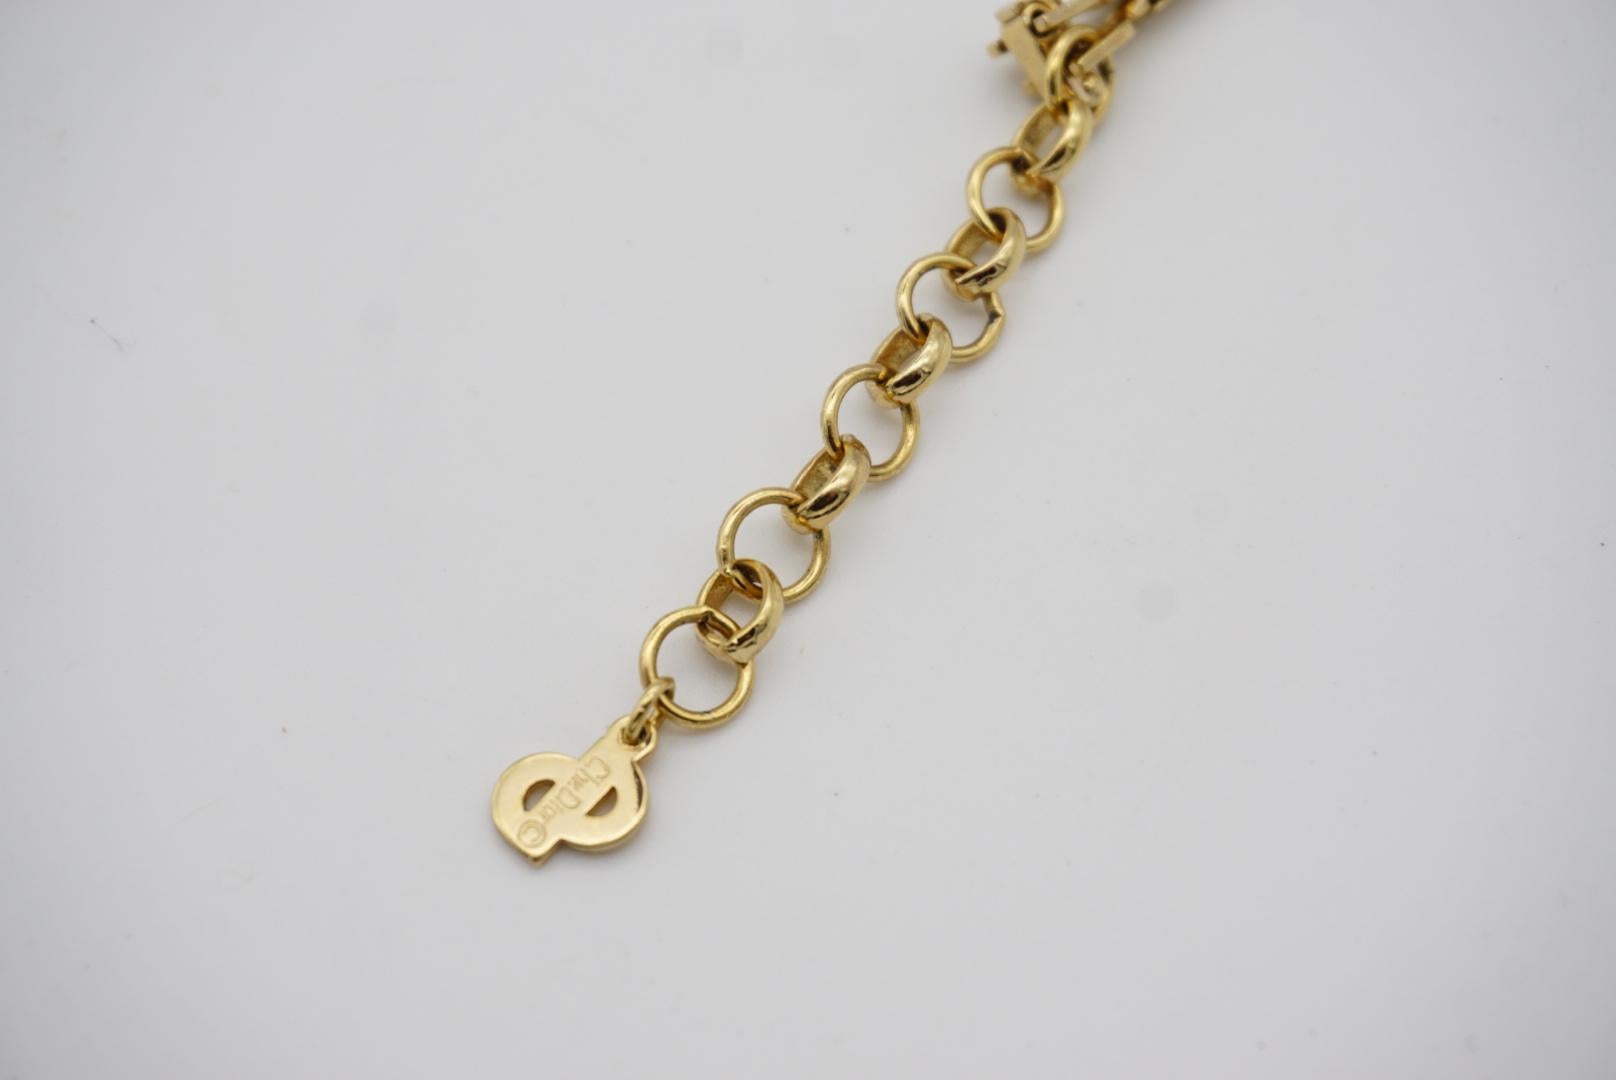 Christian Dior Vintage 1980s Large Beige Black Crystals Gold Pendant Necklace For Sale 8